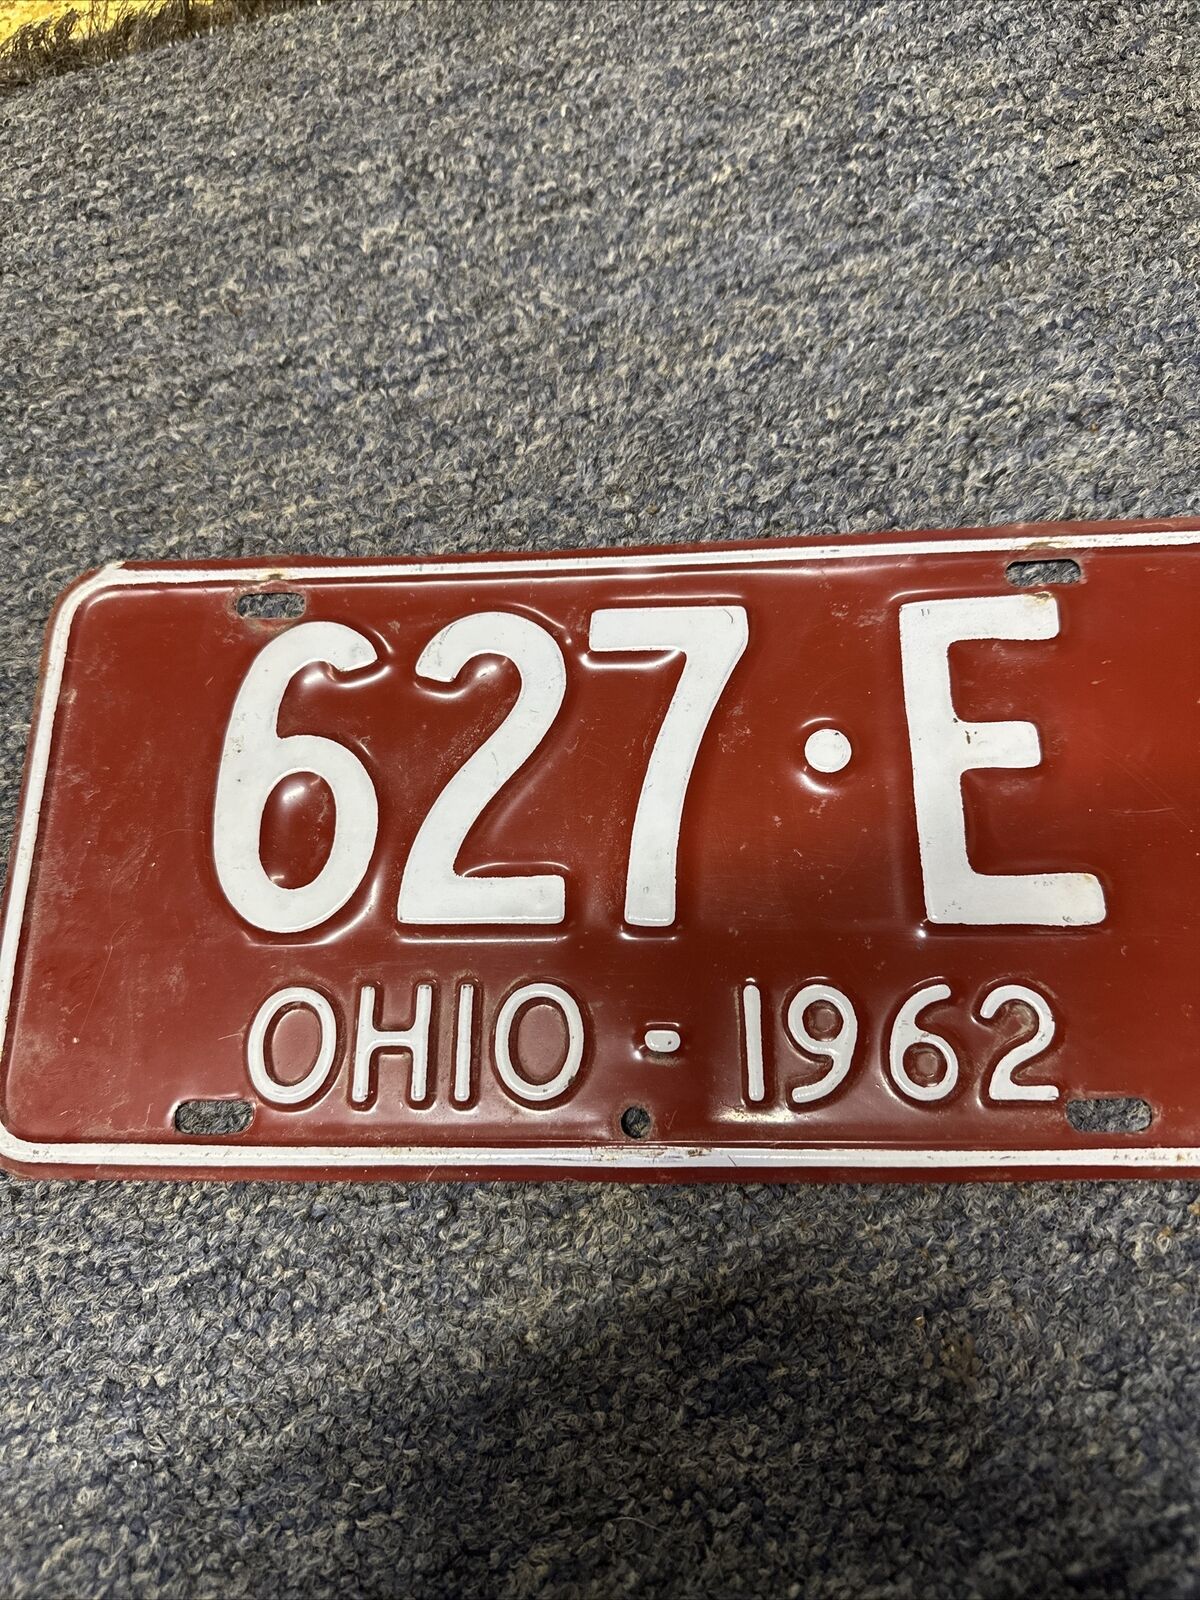 1962 ohio license plate 627.e